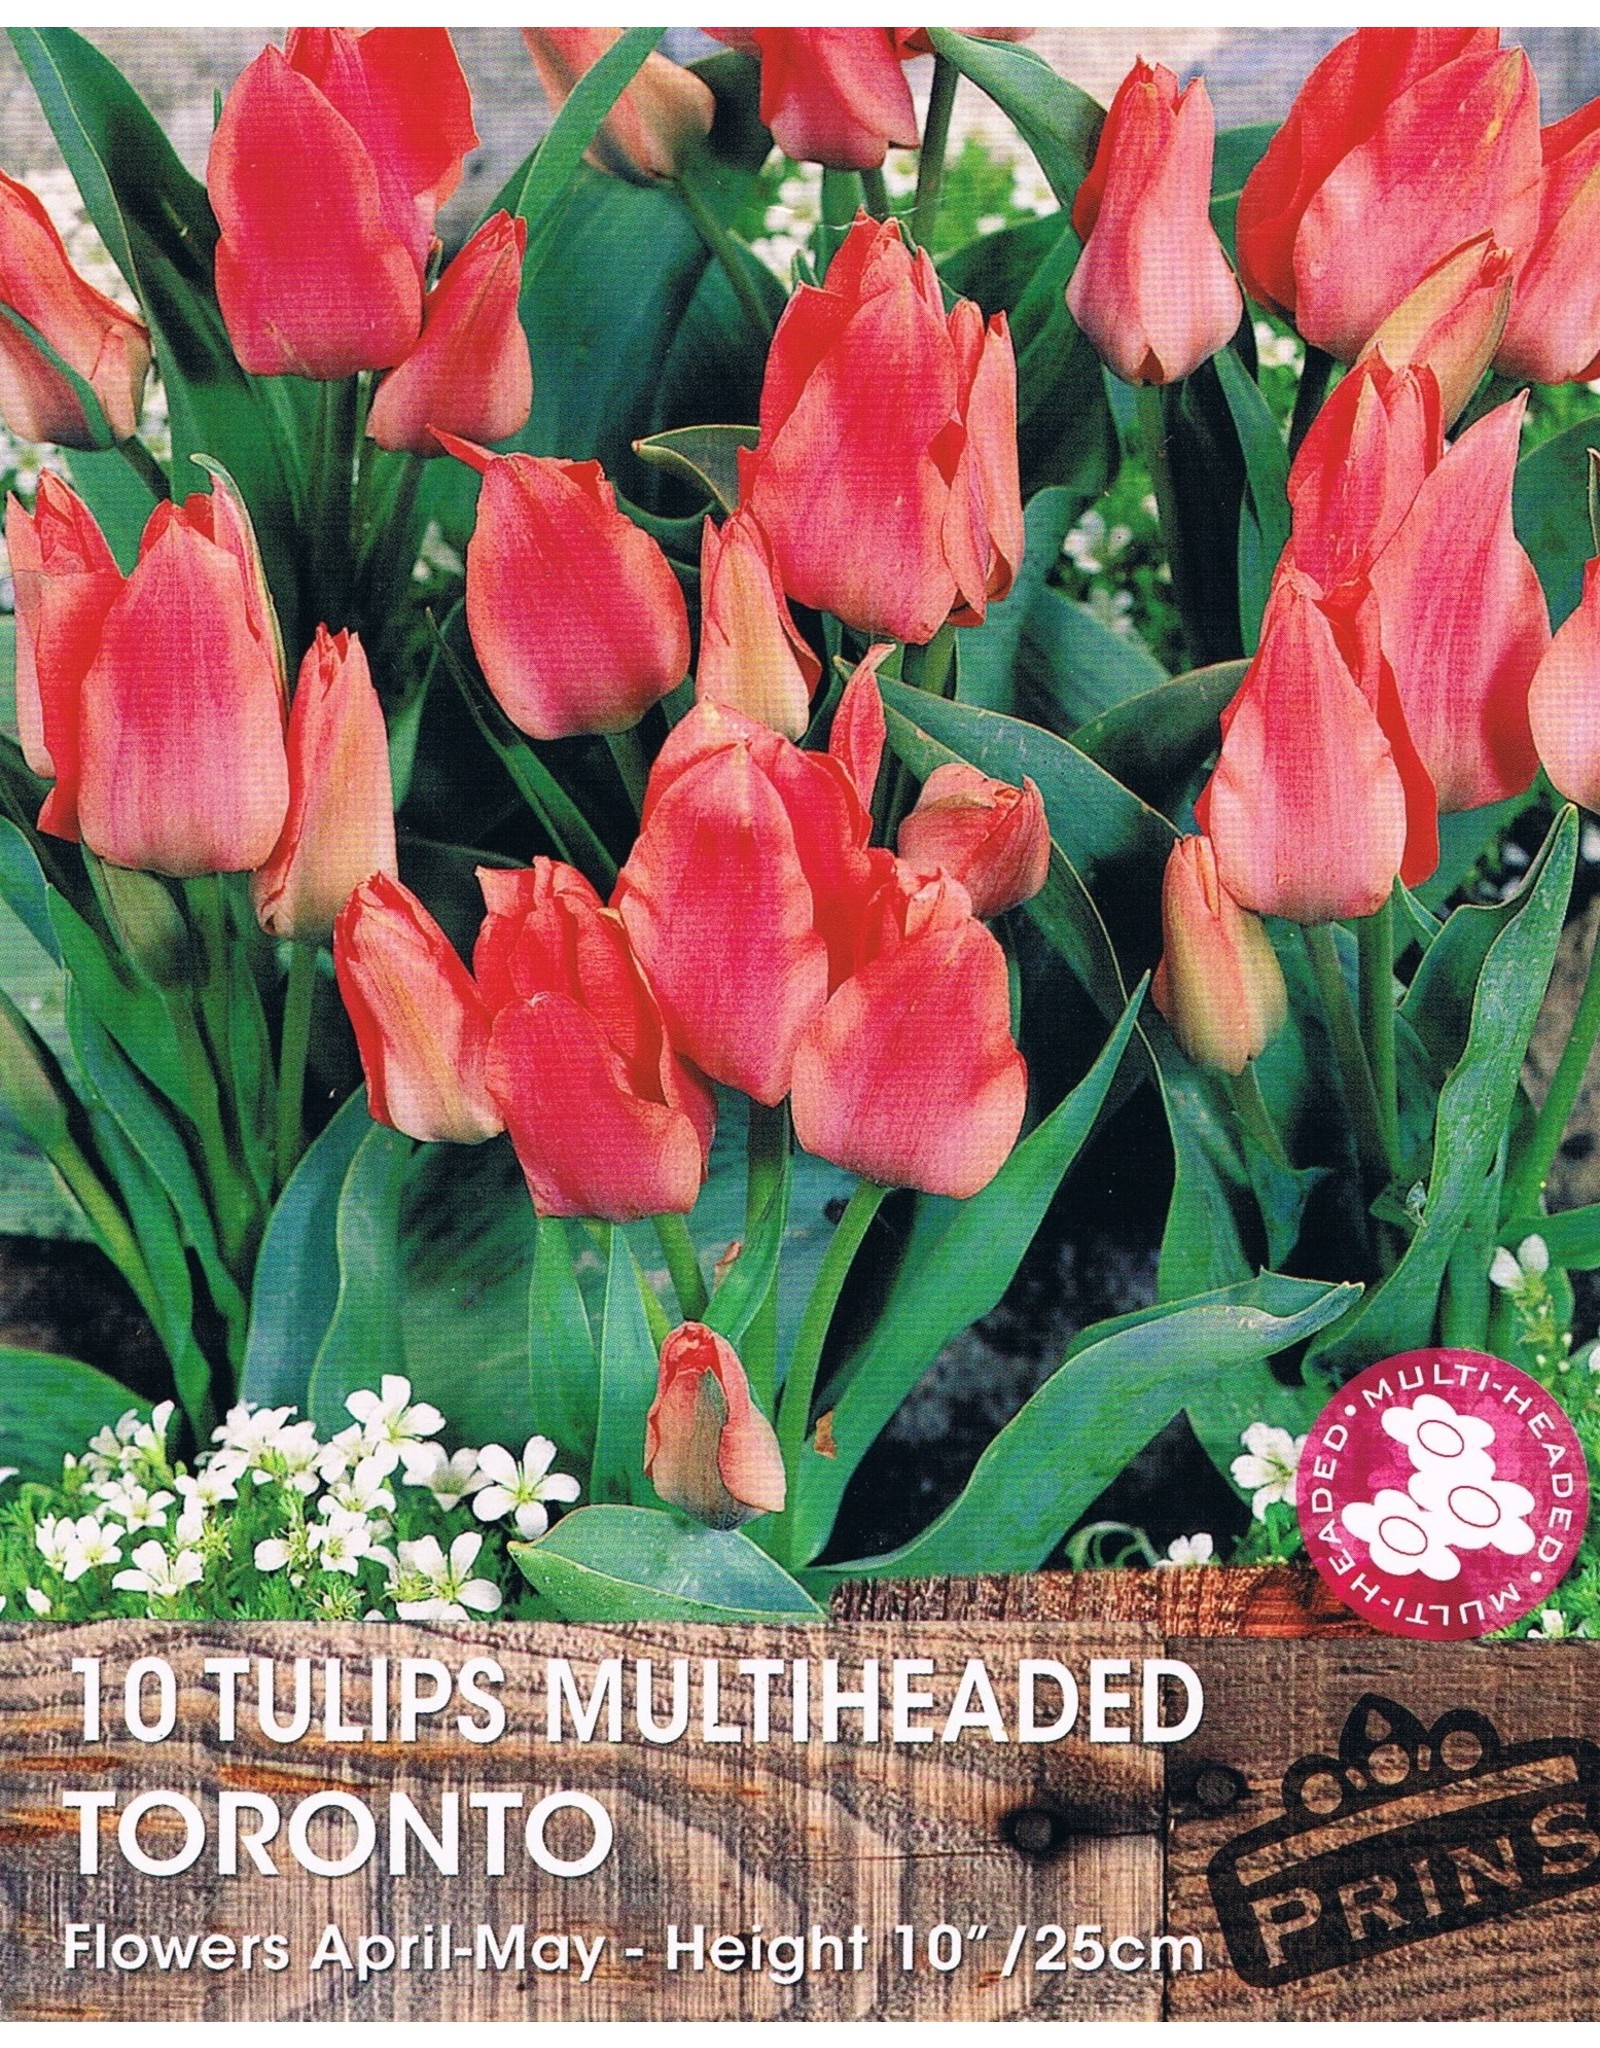 Hollands geteeld Roze meerbloemige lage tulp!